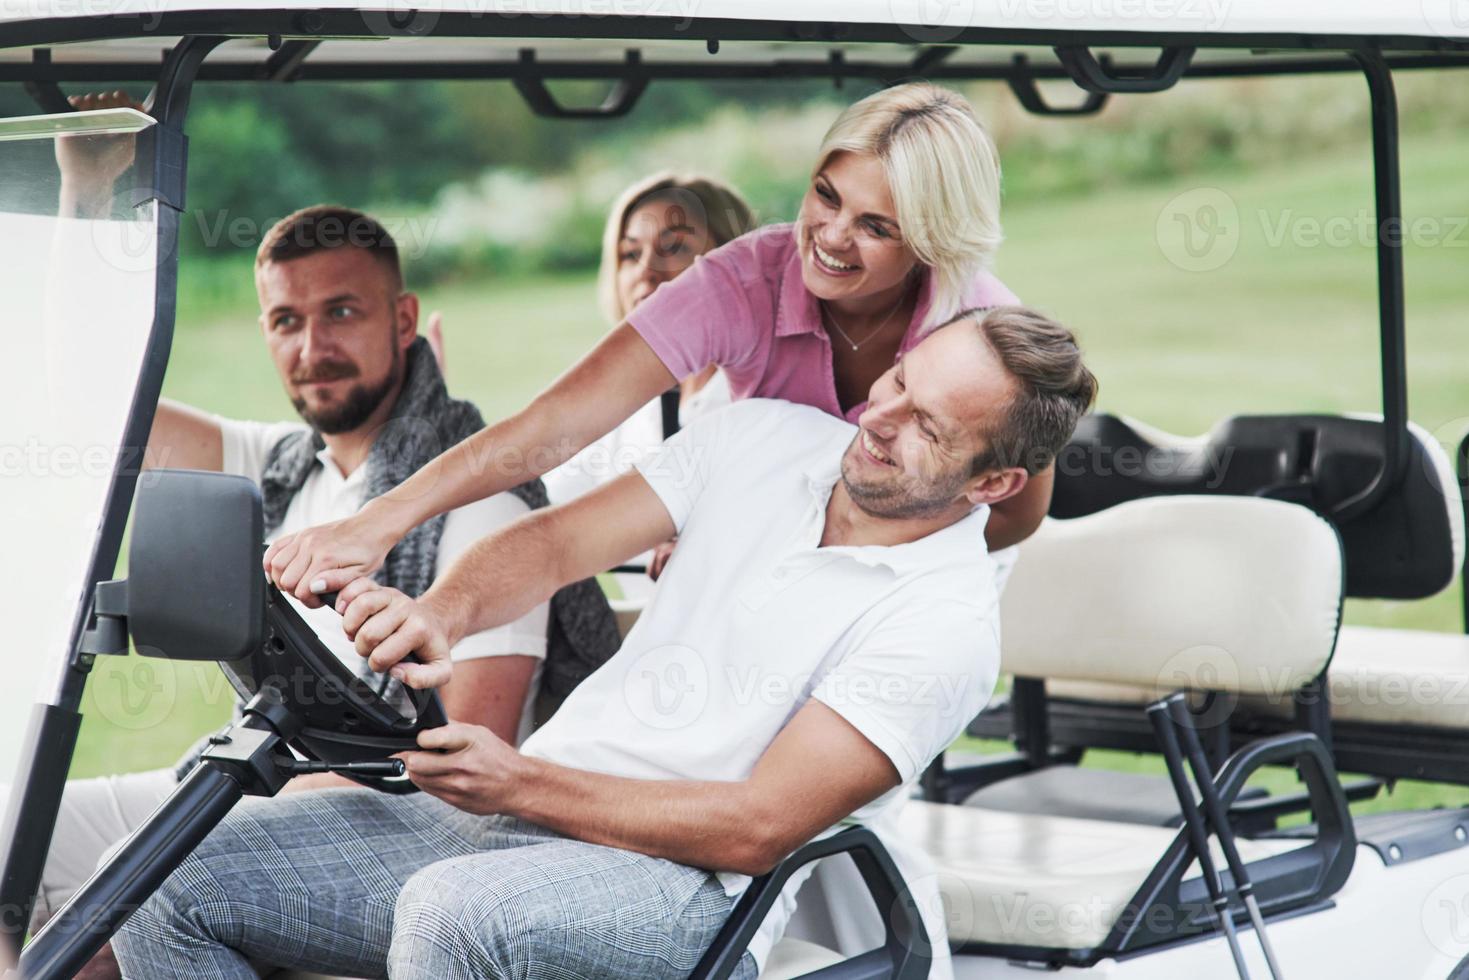 equitação extrema. amigos da família se divertindo andando no carrinho de golfe no campo após o jogo foto